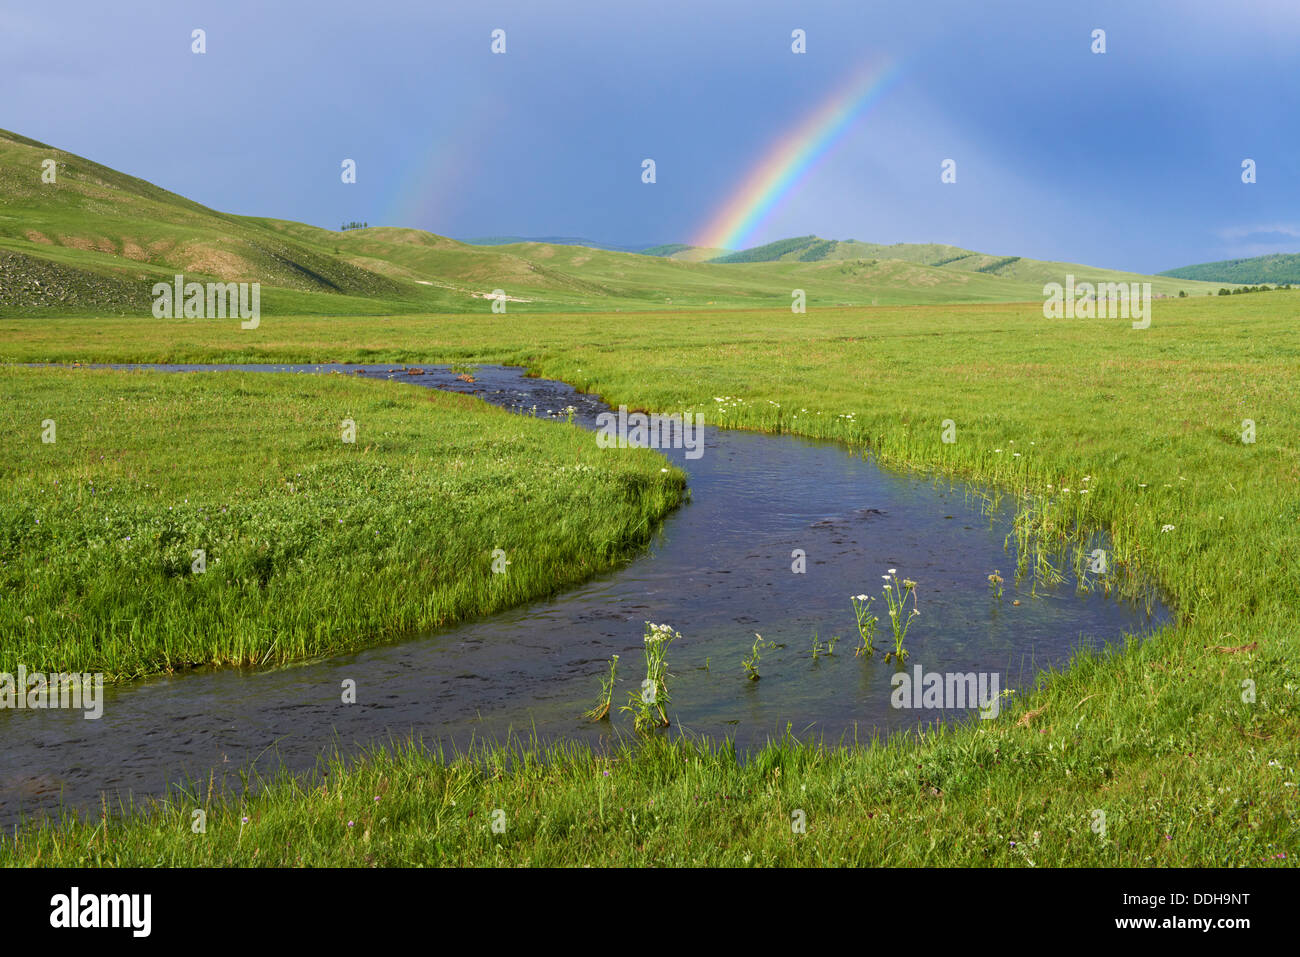 La Mongolie, Khentii province, rivière et rainbow Banque D'Images